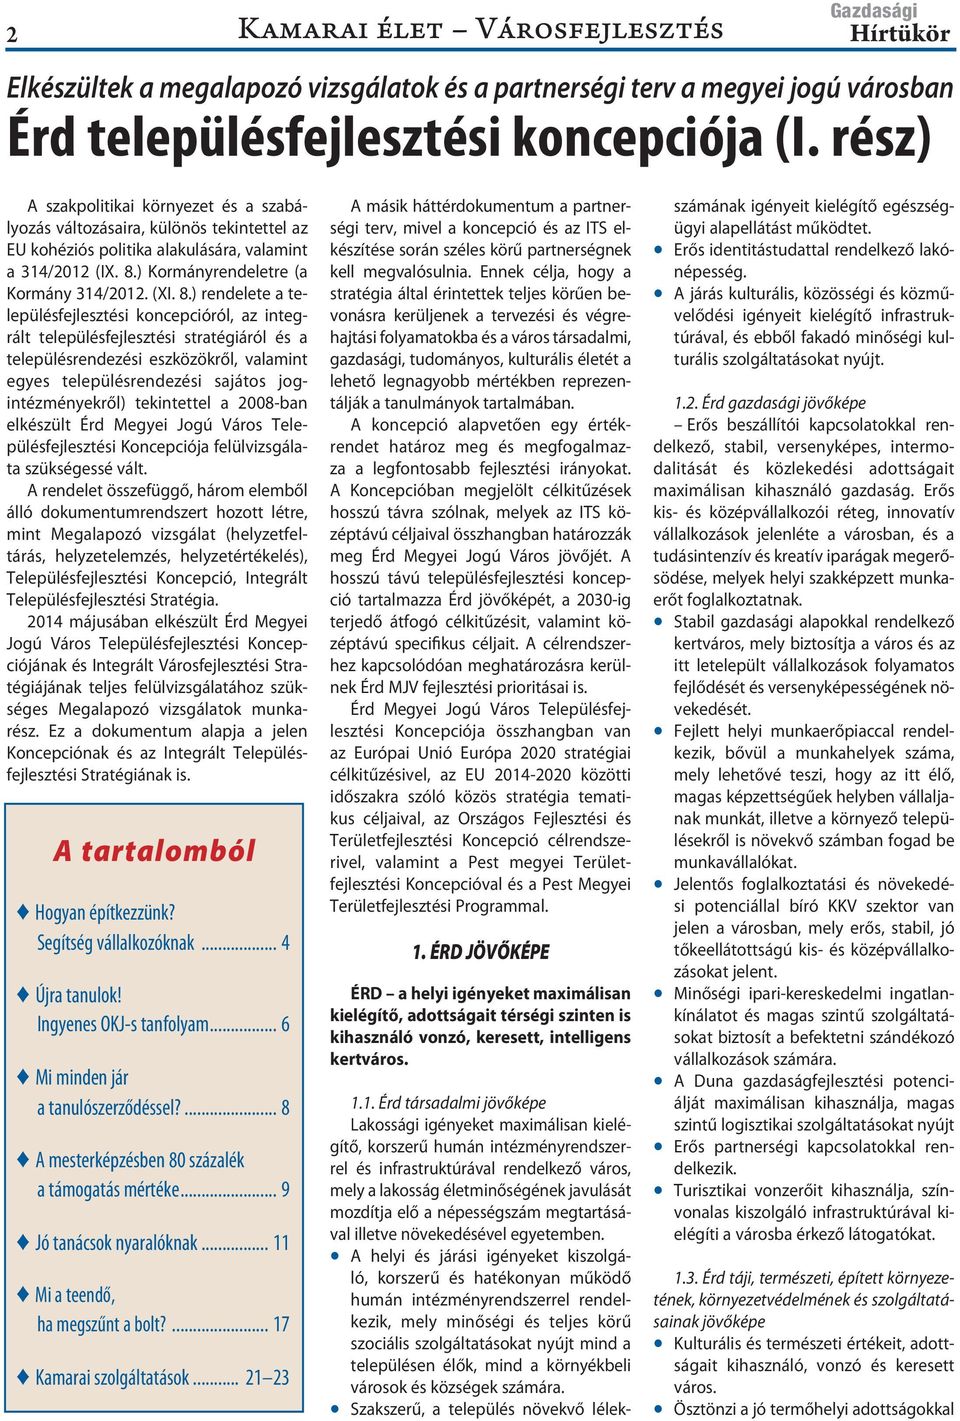 ) Kormányrendeletre (a Kormány 314/2012. (XI. 8.